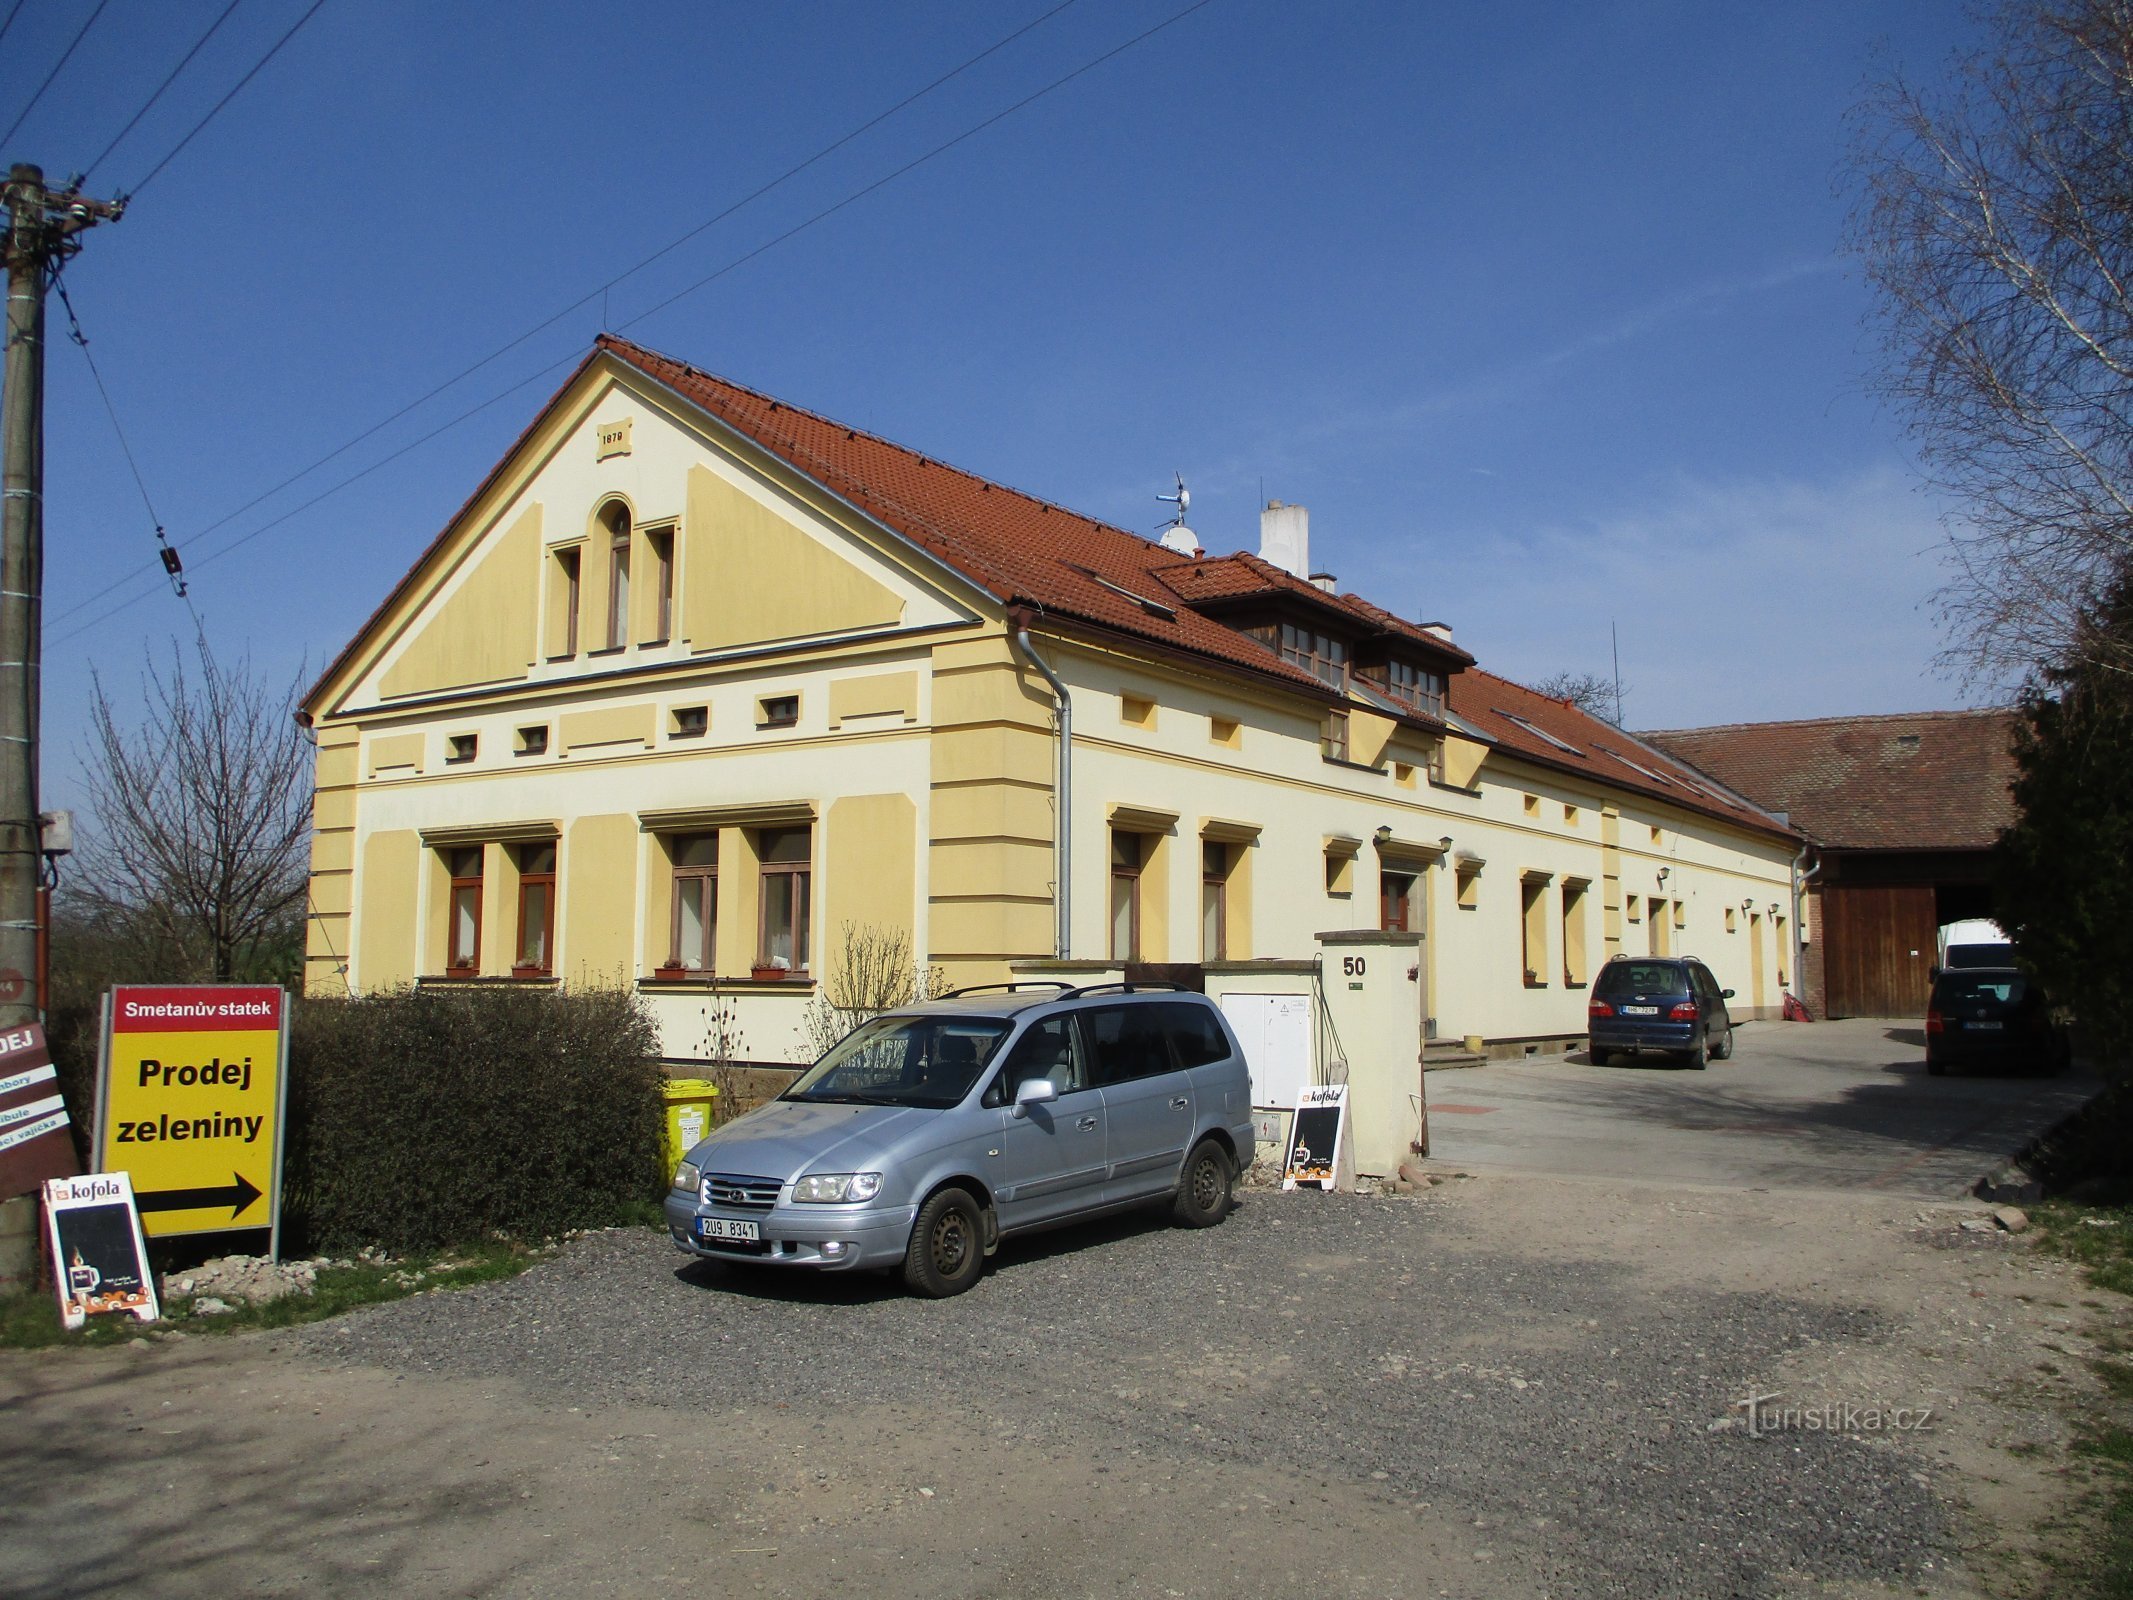 Klacovská nro 50 (Hradec Králové)